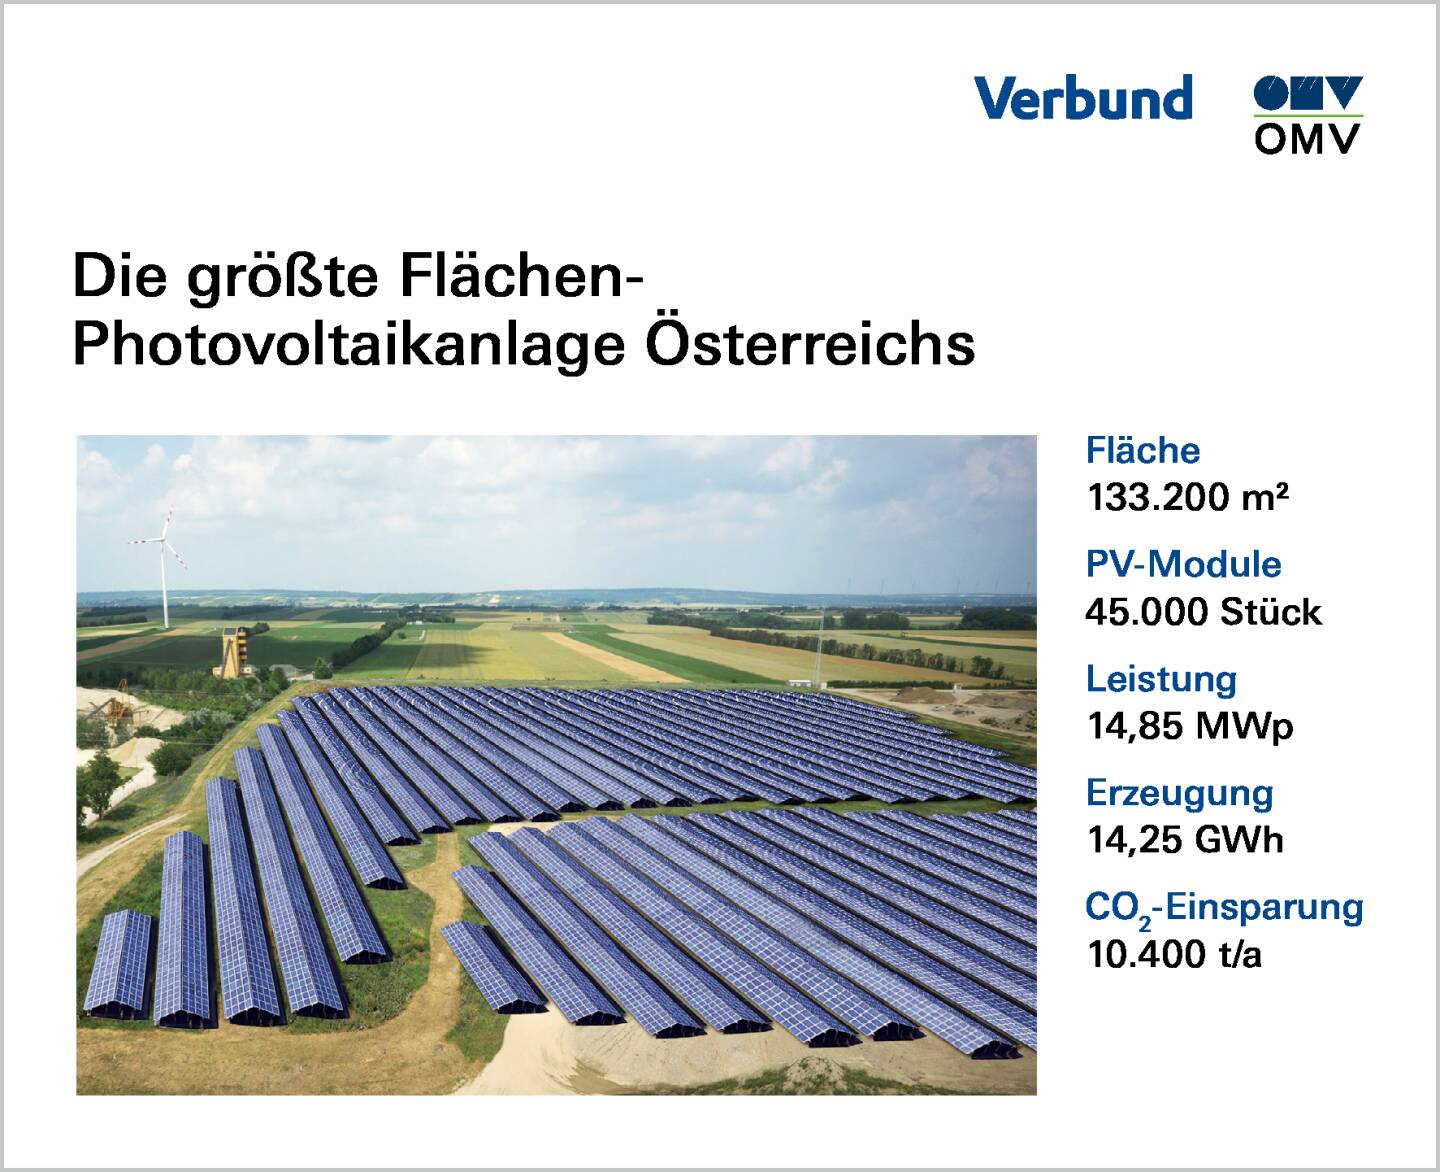 OMV und Verbund starten den Bau der größten Flächen-Photovoltaikanlage in Österreich, Infografik, Quelle: OMV